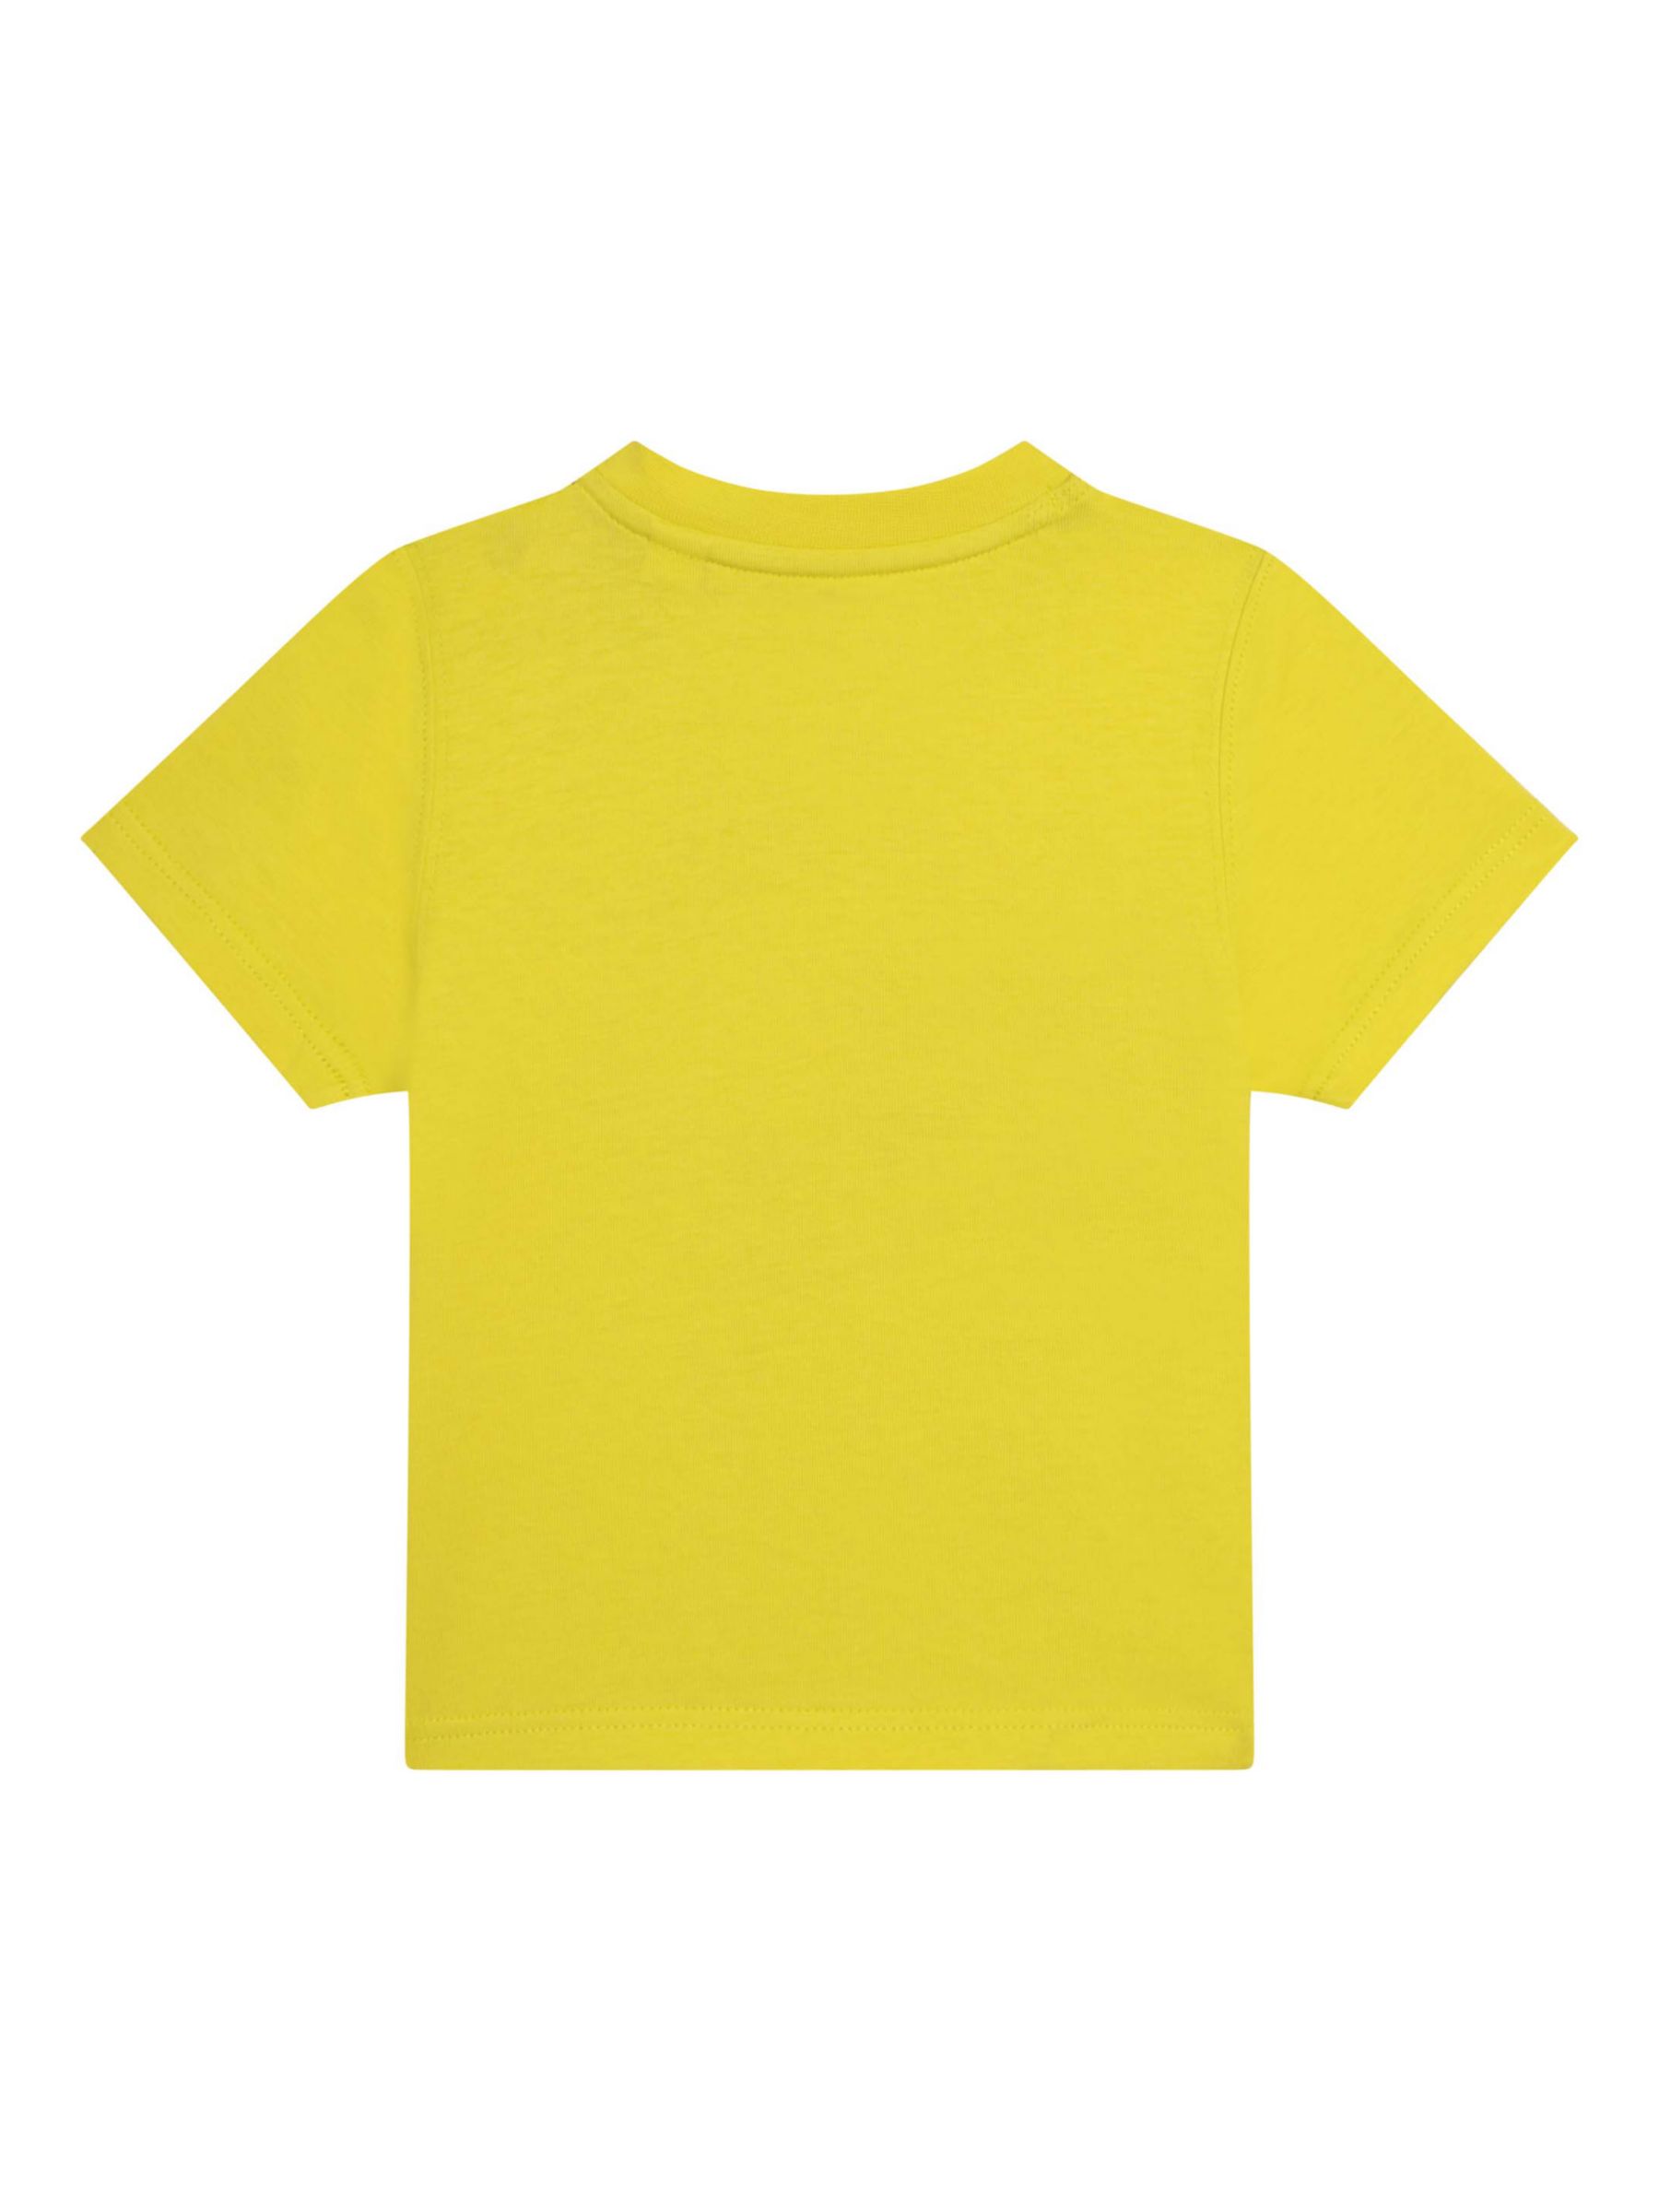 Timberland Baby Graphic Logo Print T-Shirt, Yellow/Multi at John Lewis ...